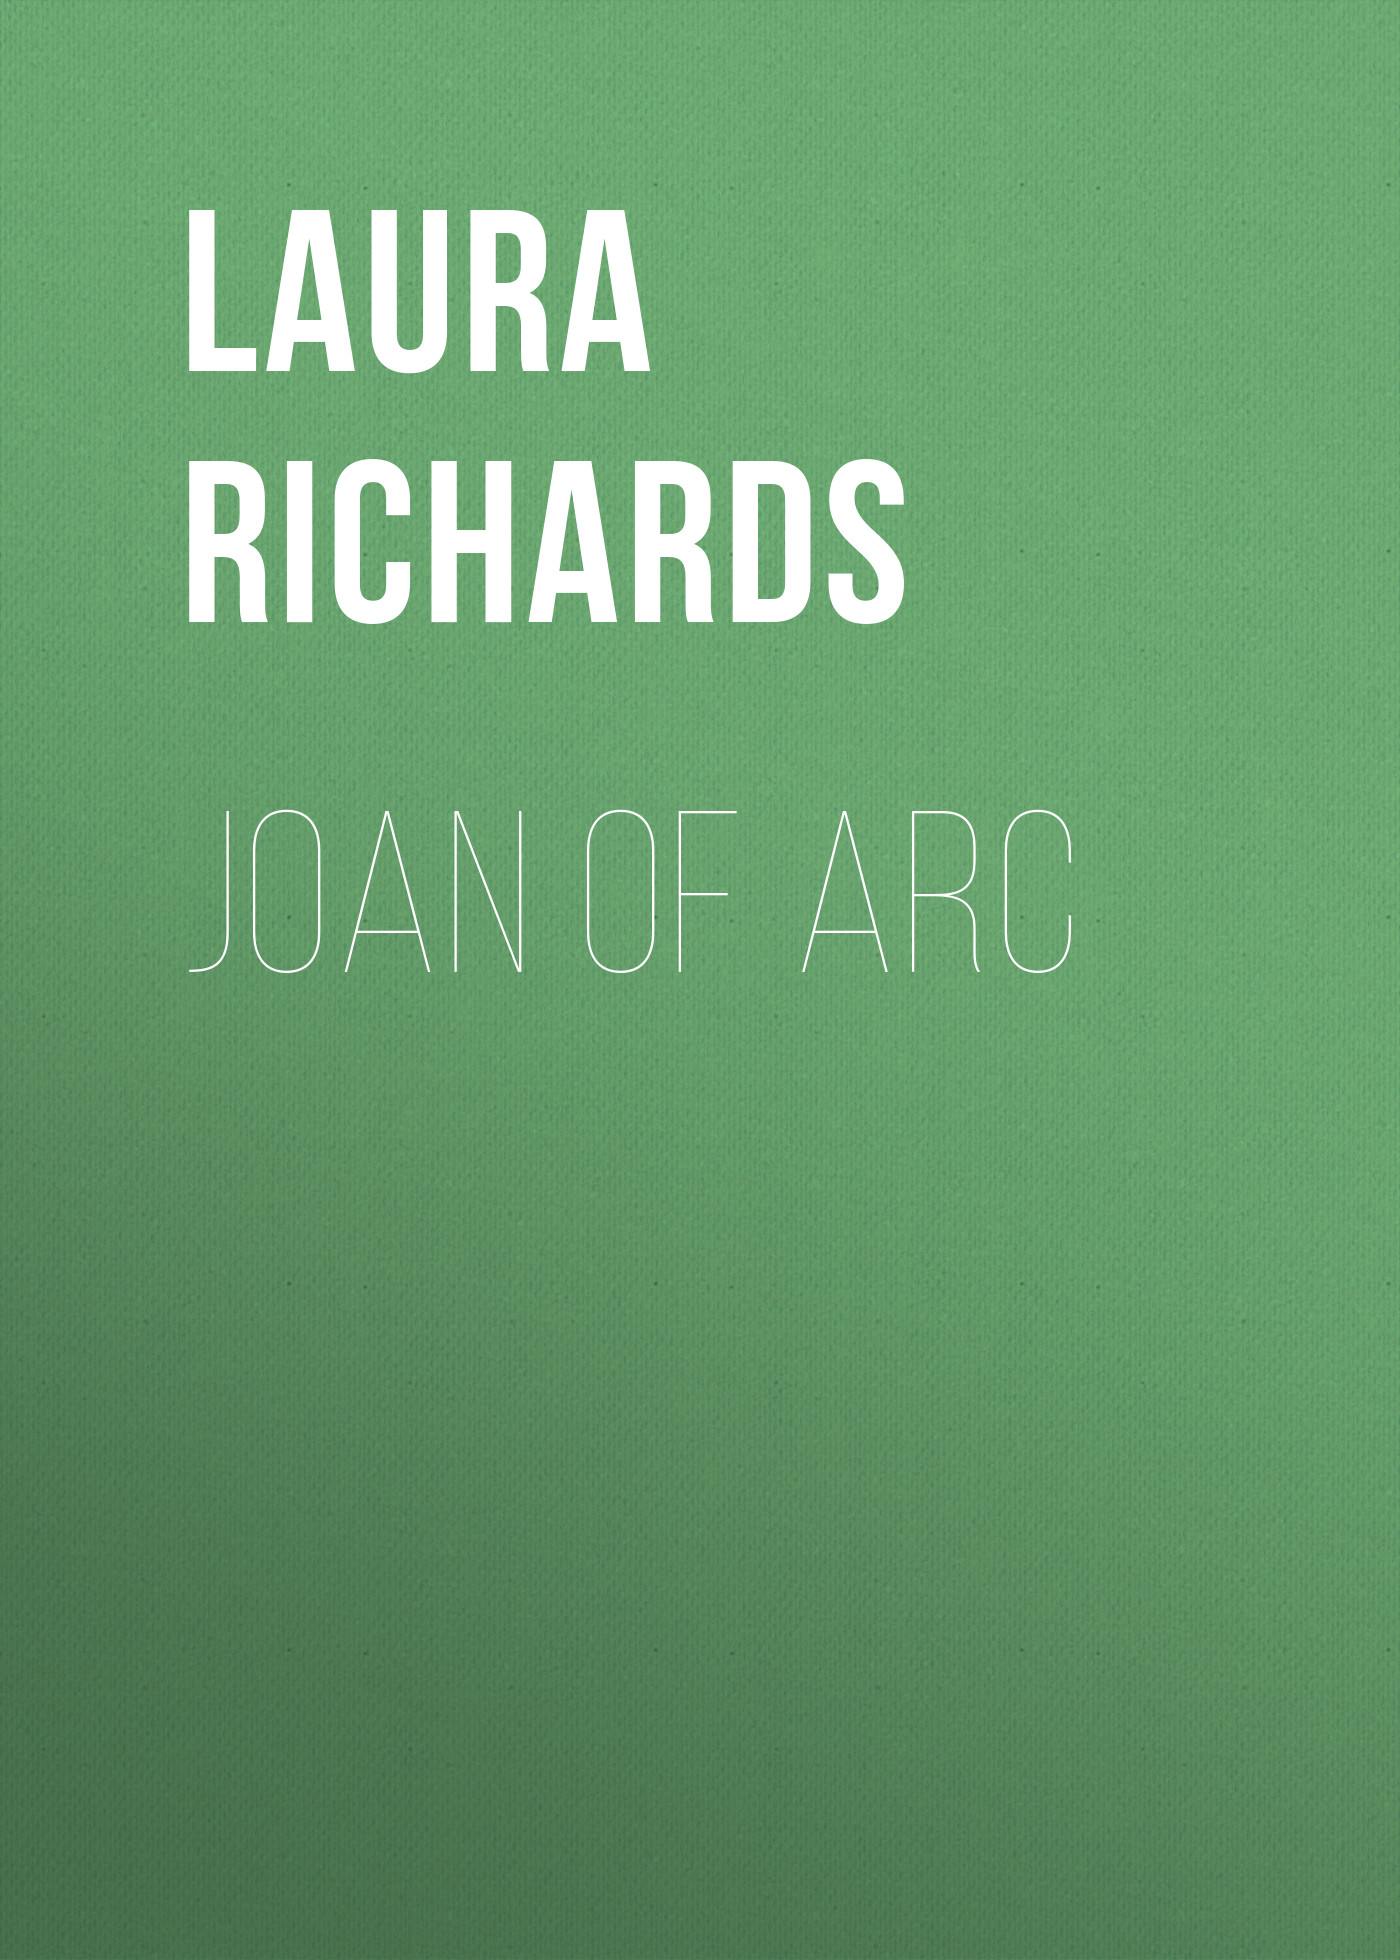 Книга Joan of Arc из серии , созданная Laura Richards, может относится к жанру Зарубежная классика, Иностранные языки. Стоимость электронной книги Joan of Arc с идентификатором 23157891 составляет 0 руб.